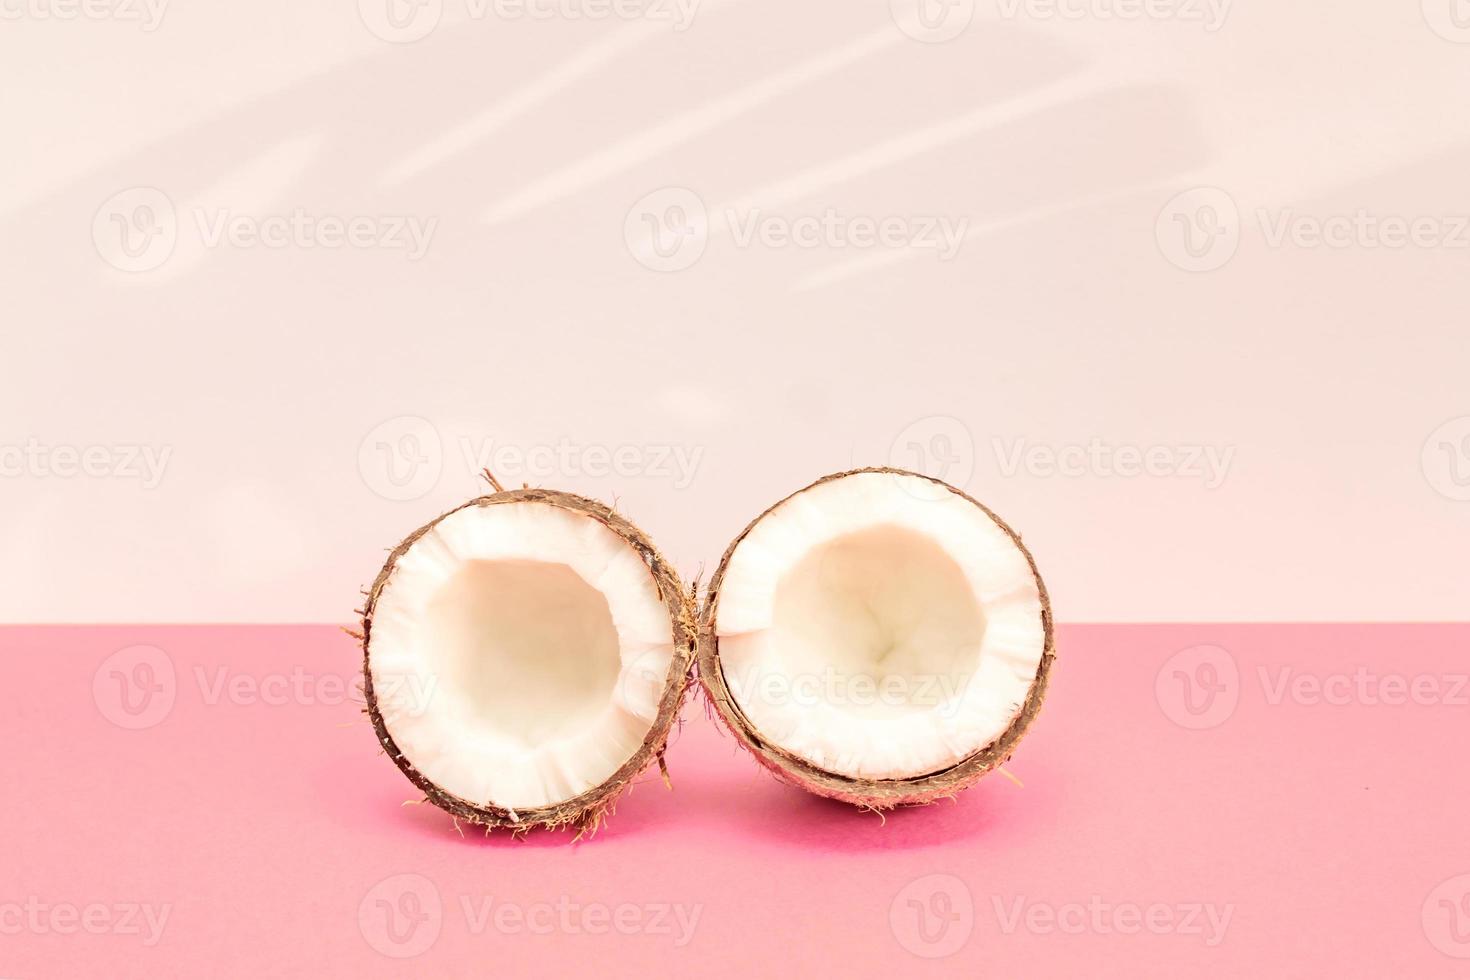 två halvor av färsk rå kokos på rosa backgound med kight skuggor i vit. foto